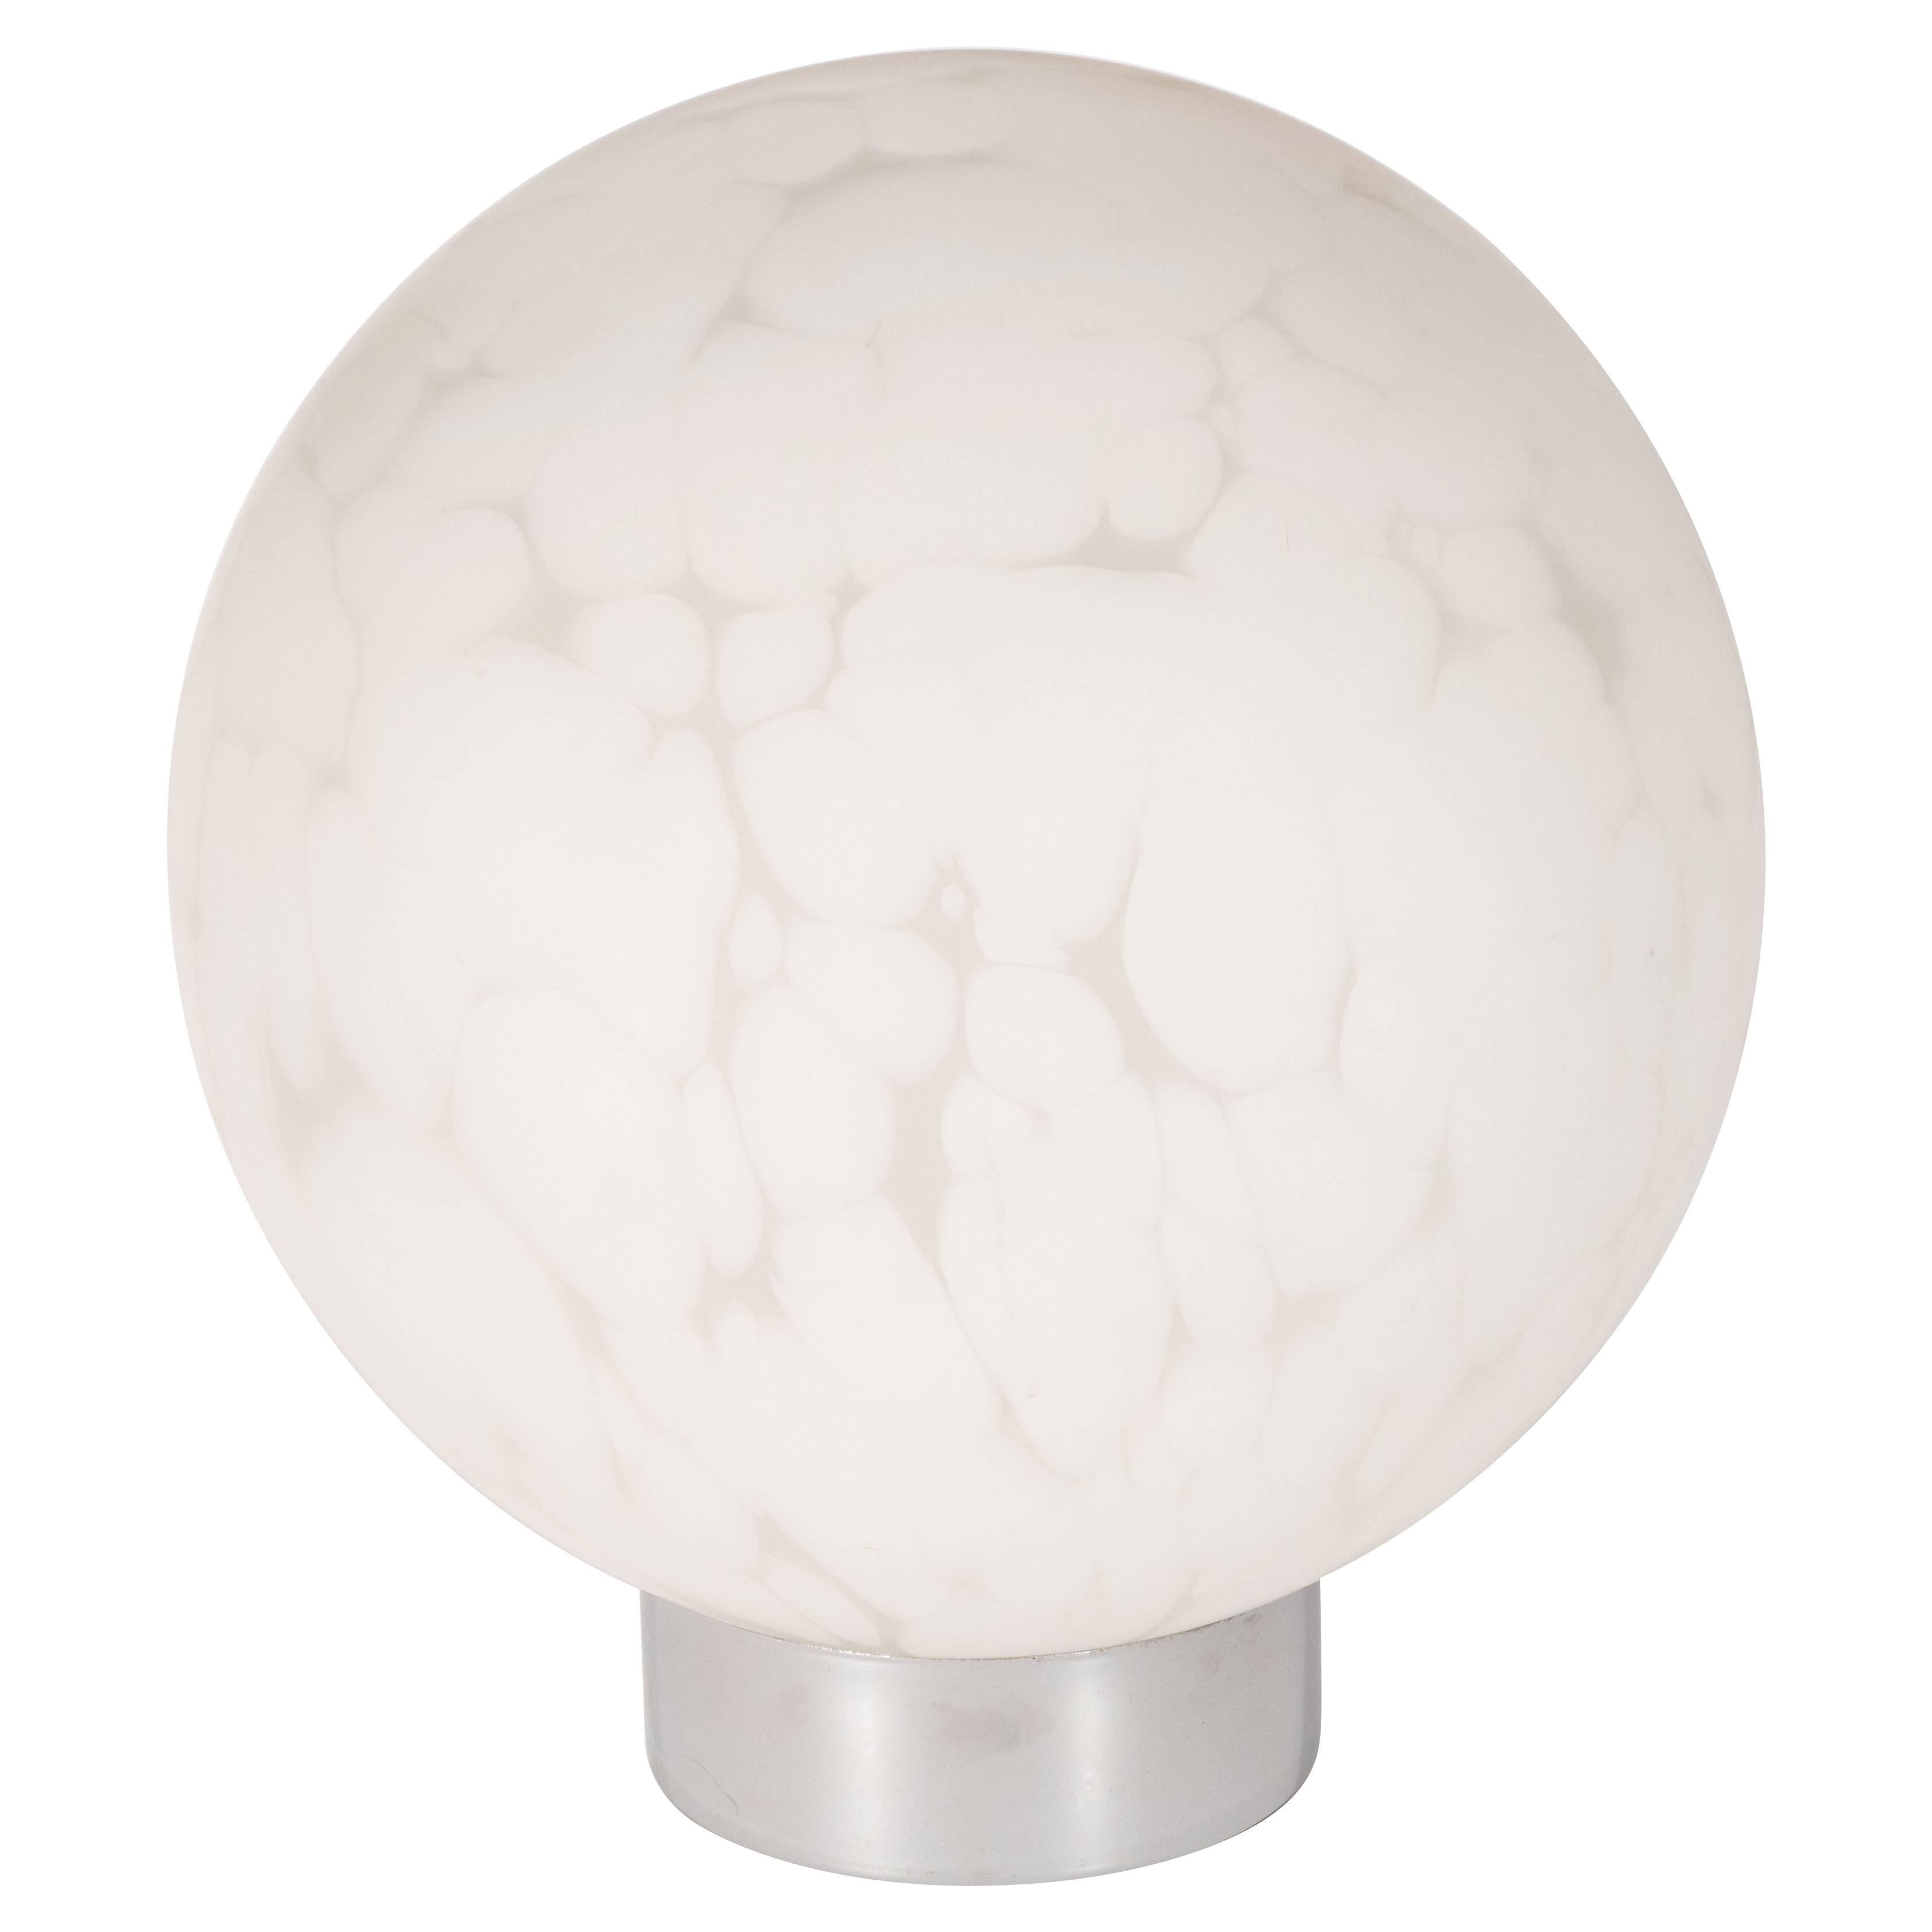 Midcentury Handblown Murano Cumulus White Glass Orbital Lamp with Chrome Base